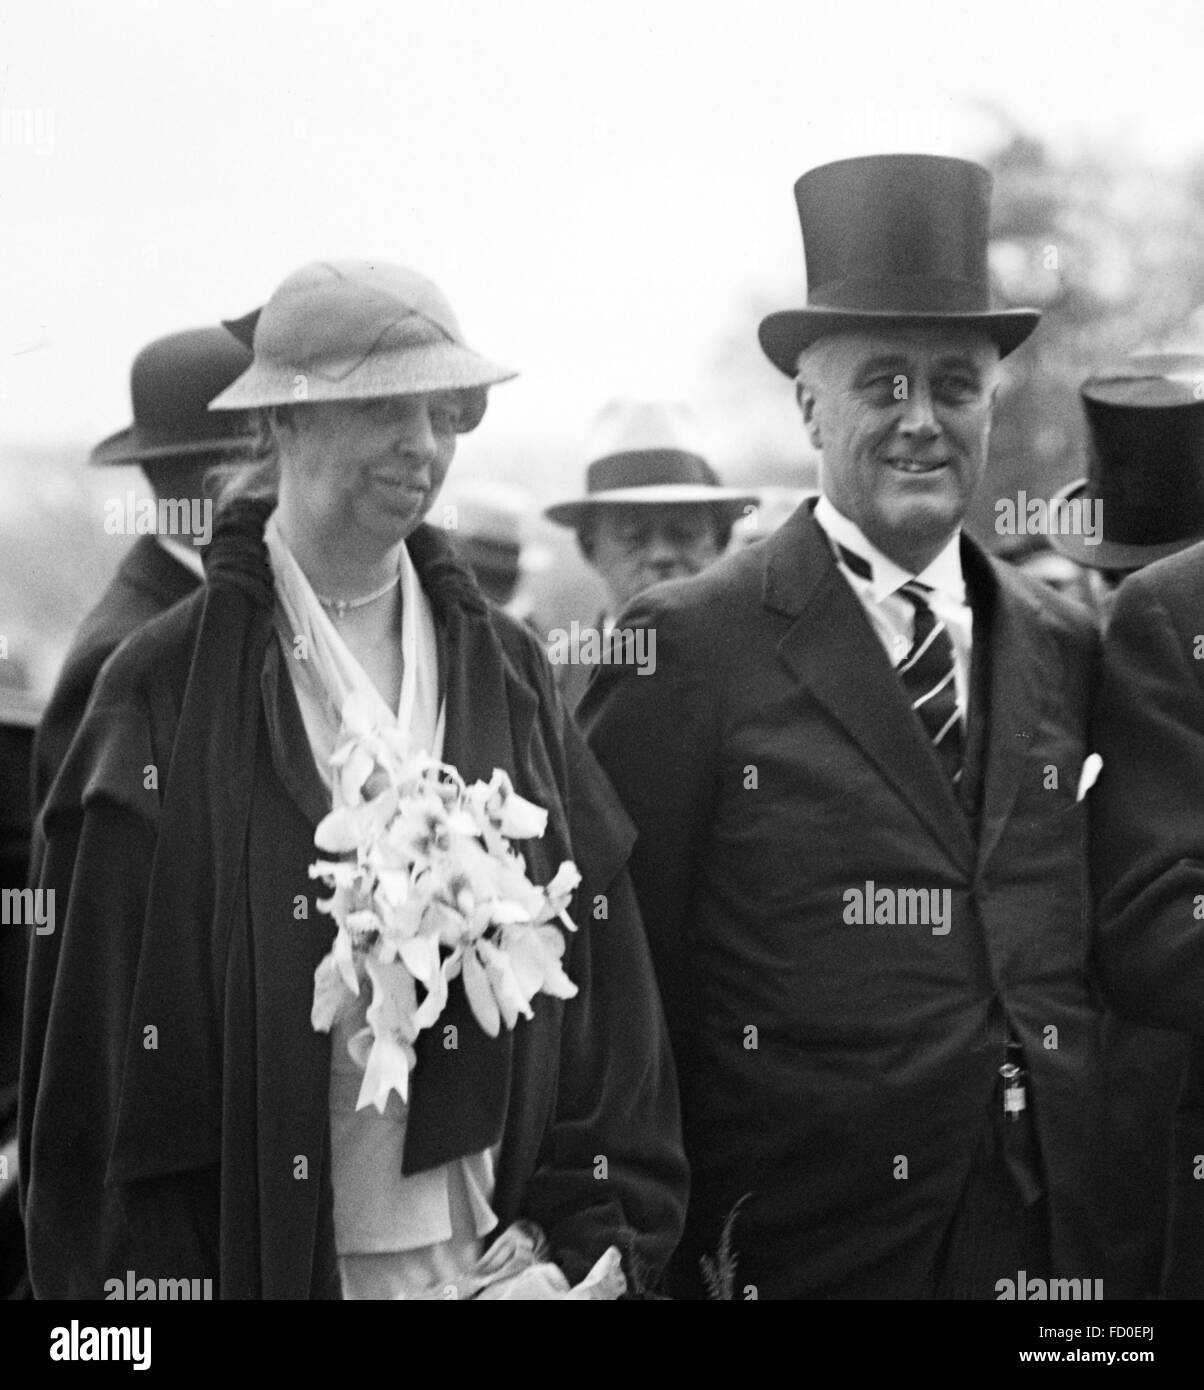 Präsident Franklin D Roosevelt, der 32. Präsident der USA, mit seiner Frau, Eleanor Roosevelt, bei seiner Amtseinführung in Washington DC am 4. März 1933 Stockfoto